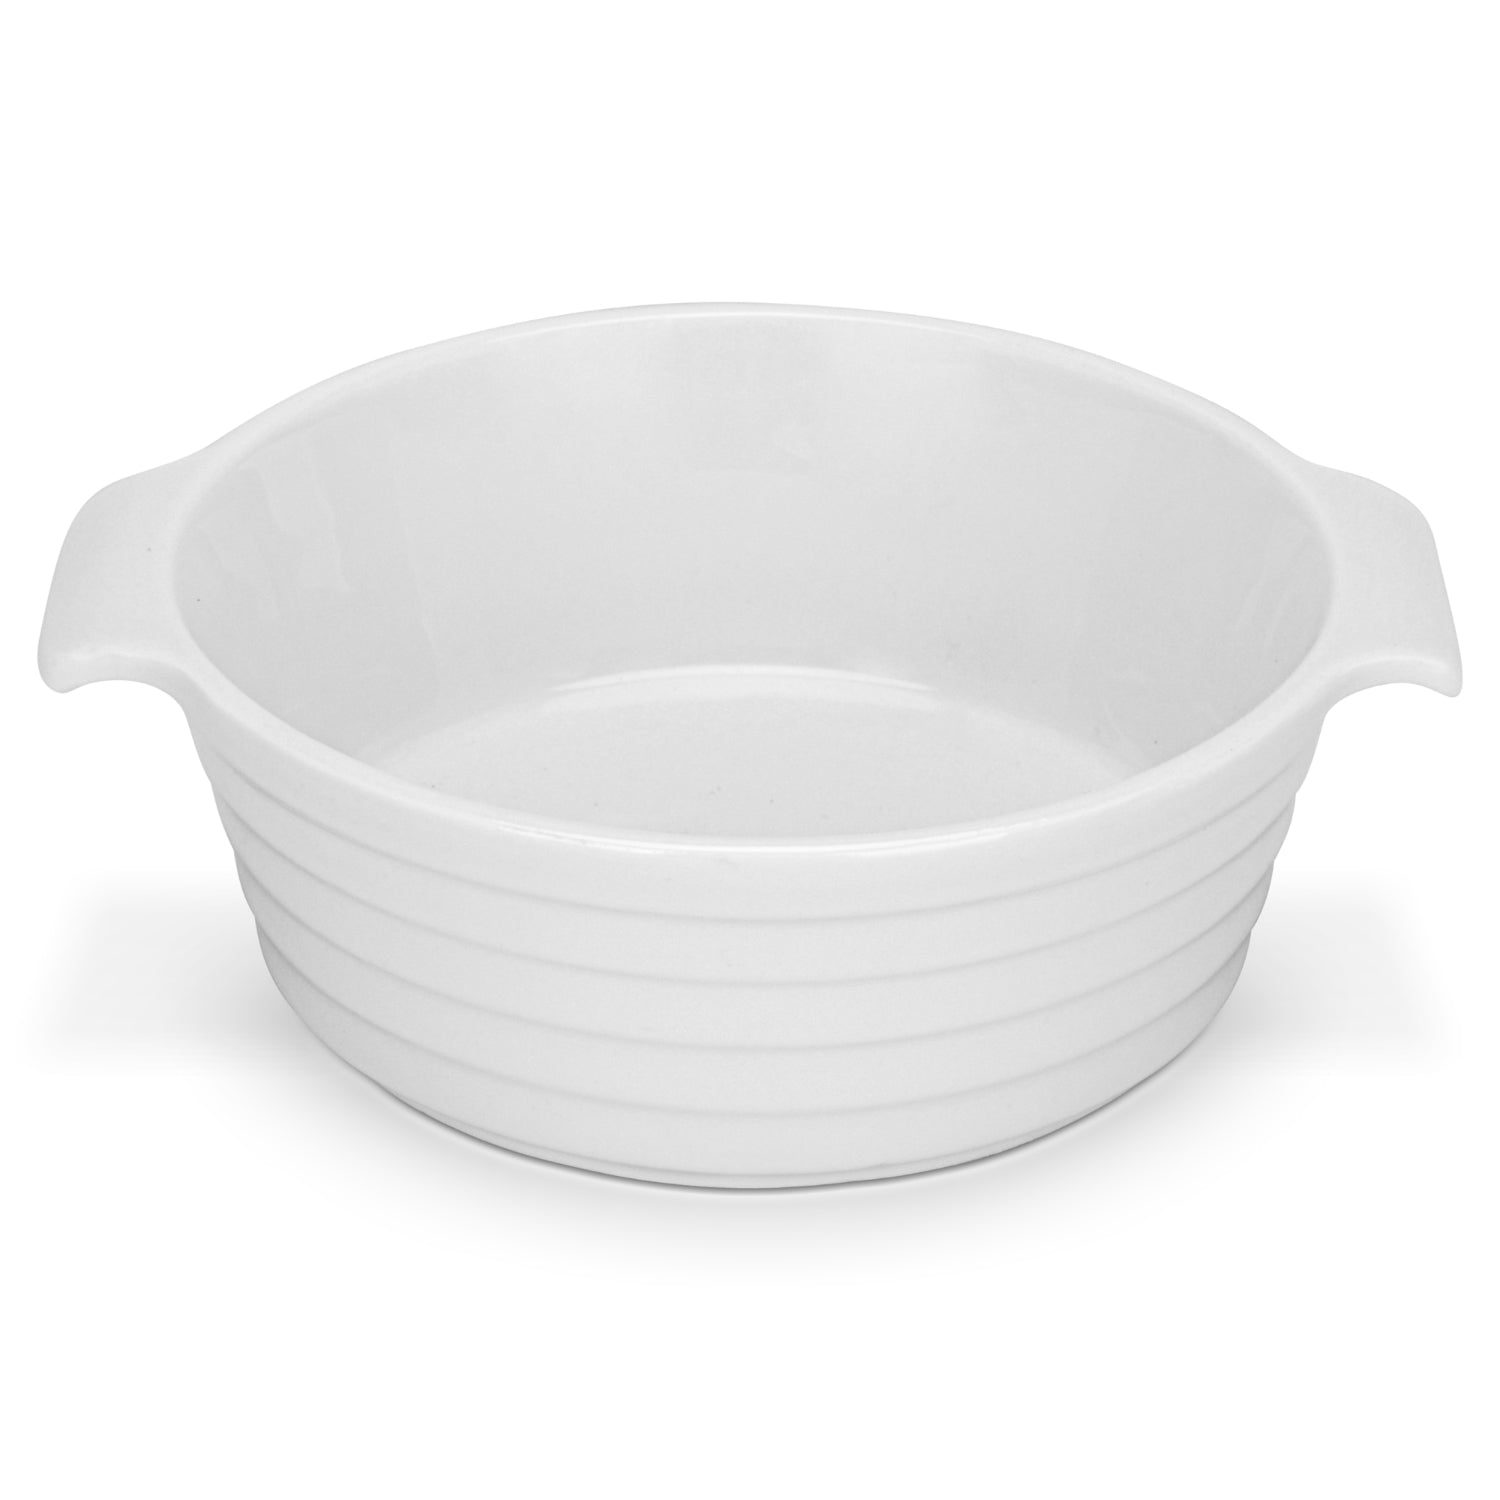 Fissman 3 Piece Round Baking Dish 12x4.5cm/220ml Porcelain